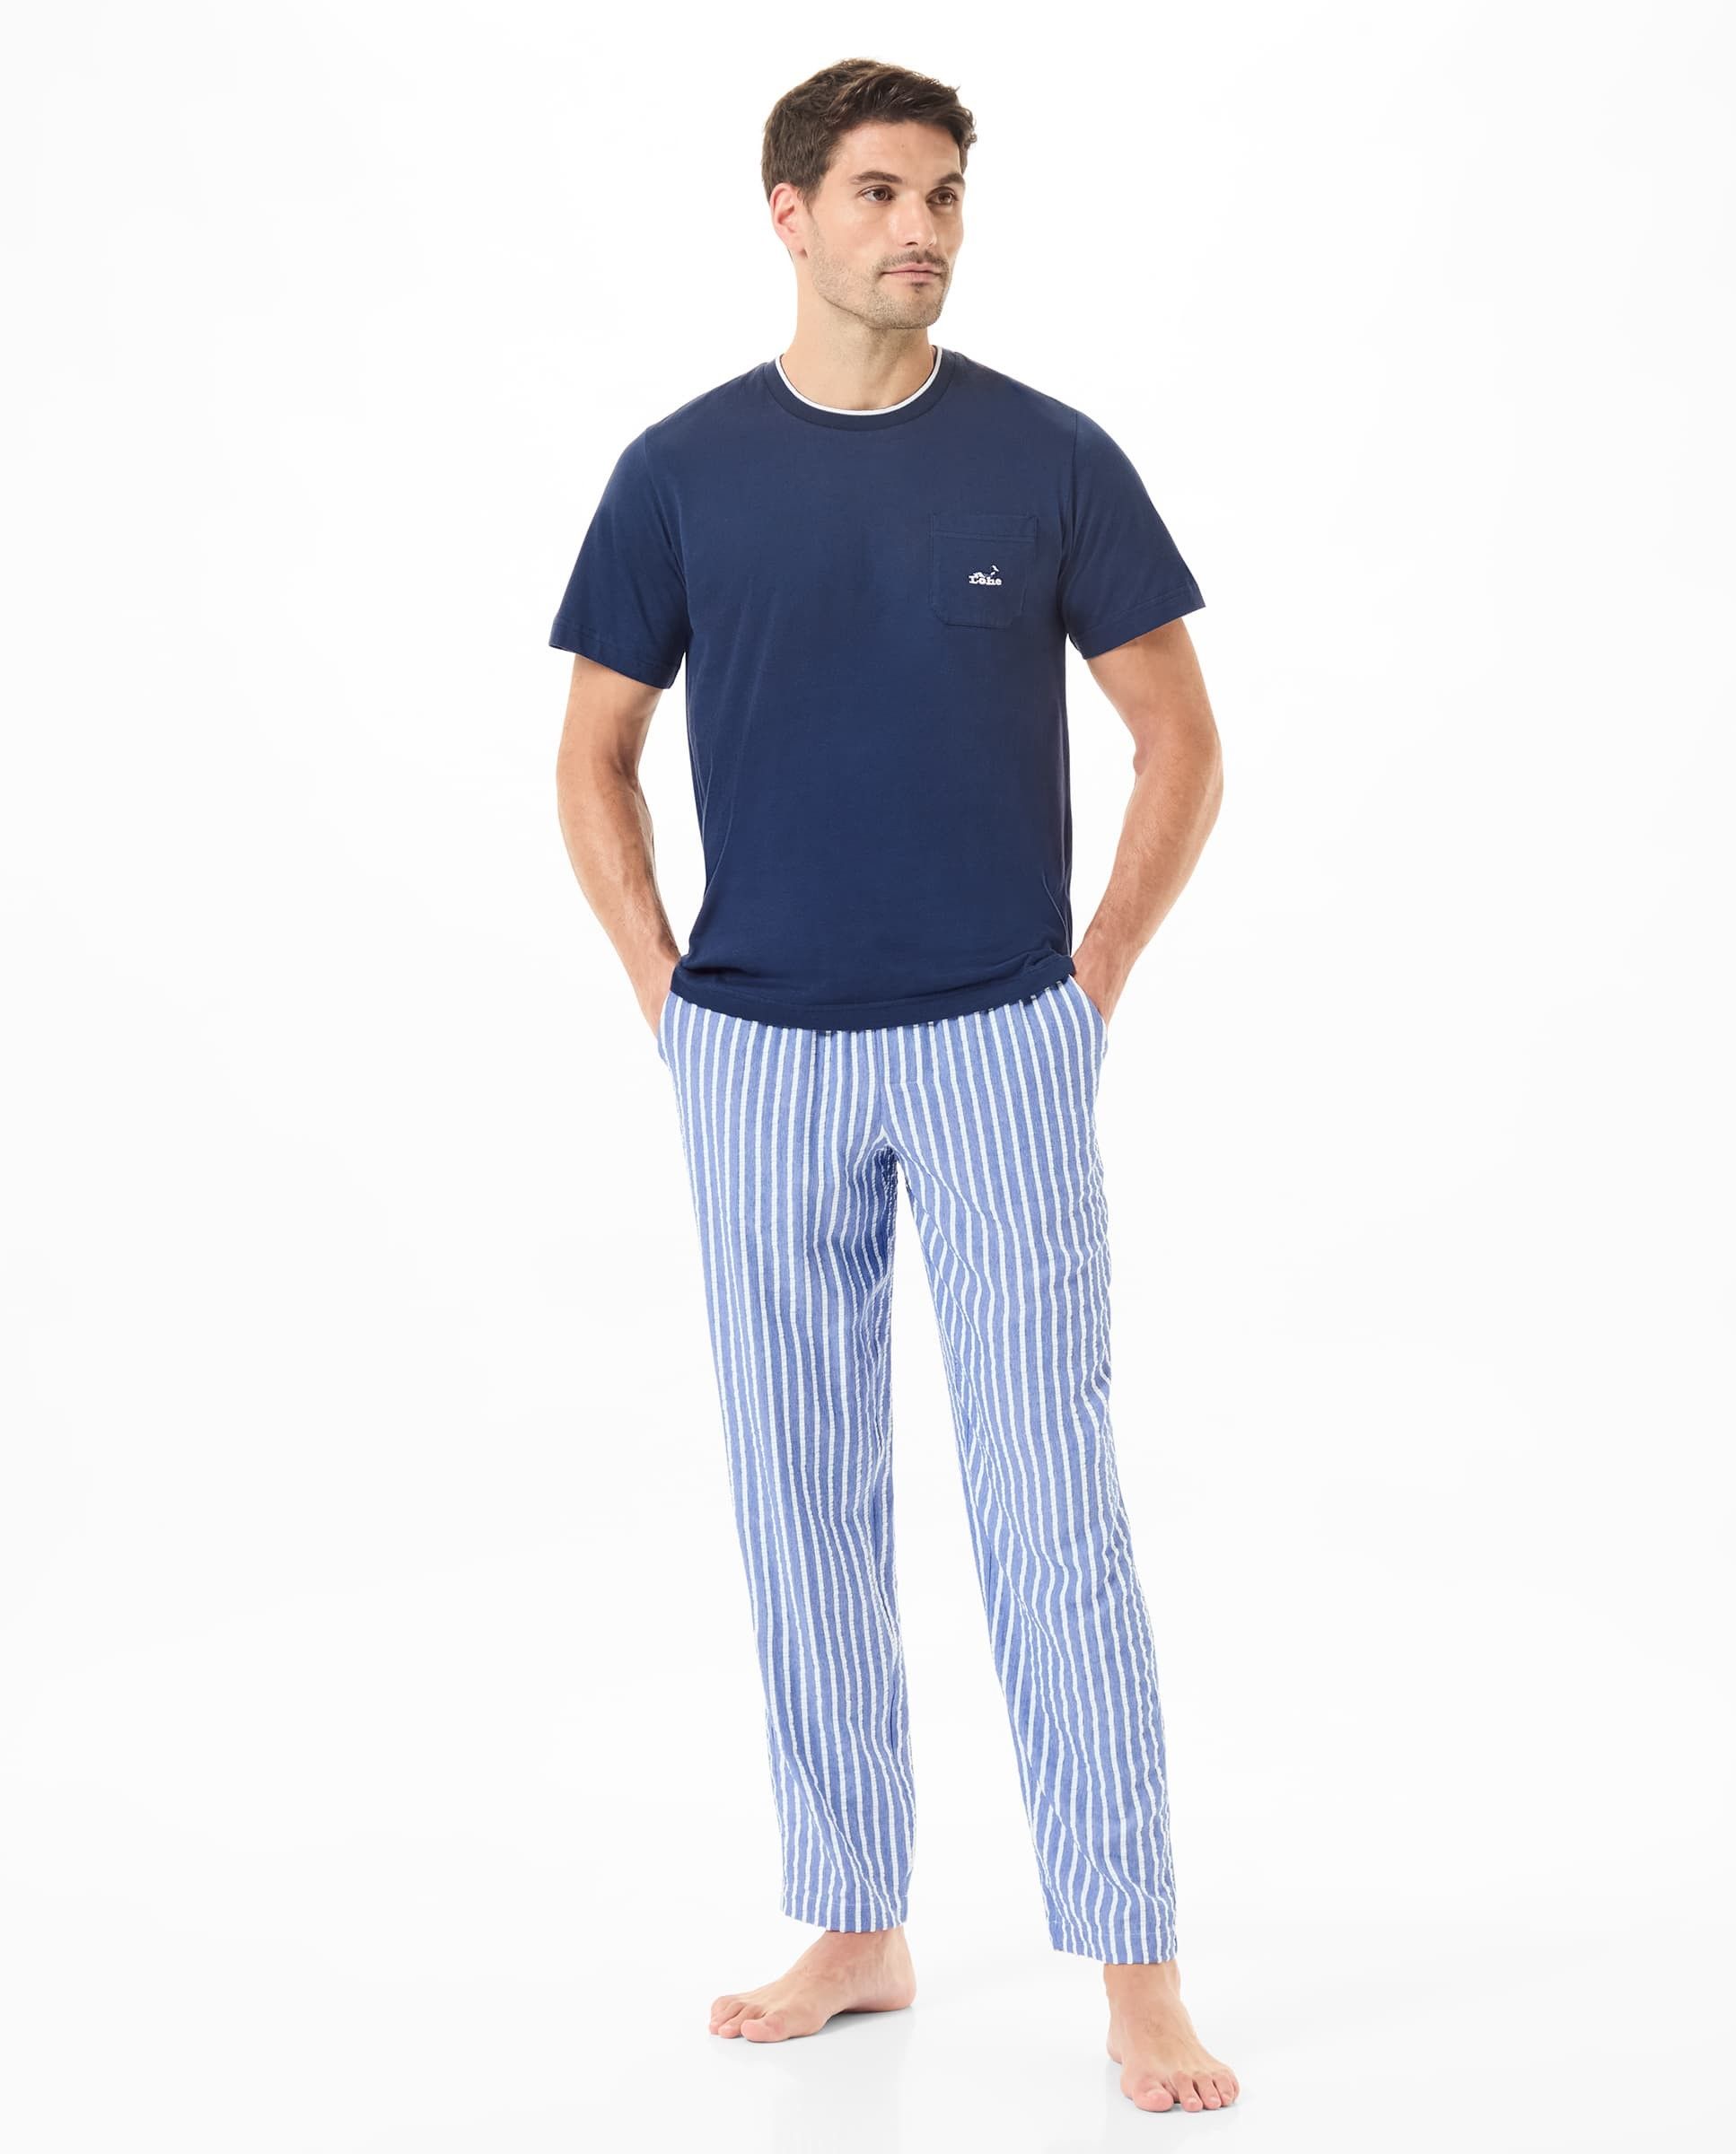 Un hombre vistiendo pijama con pantalón a rayas y una camiseta azul marino.